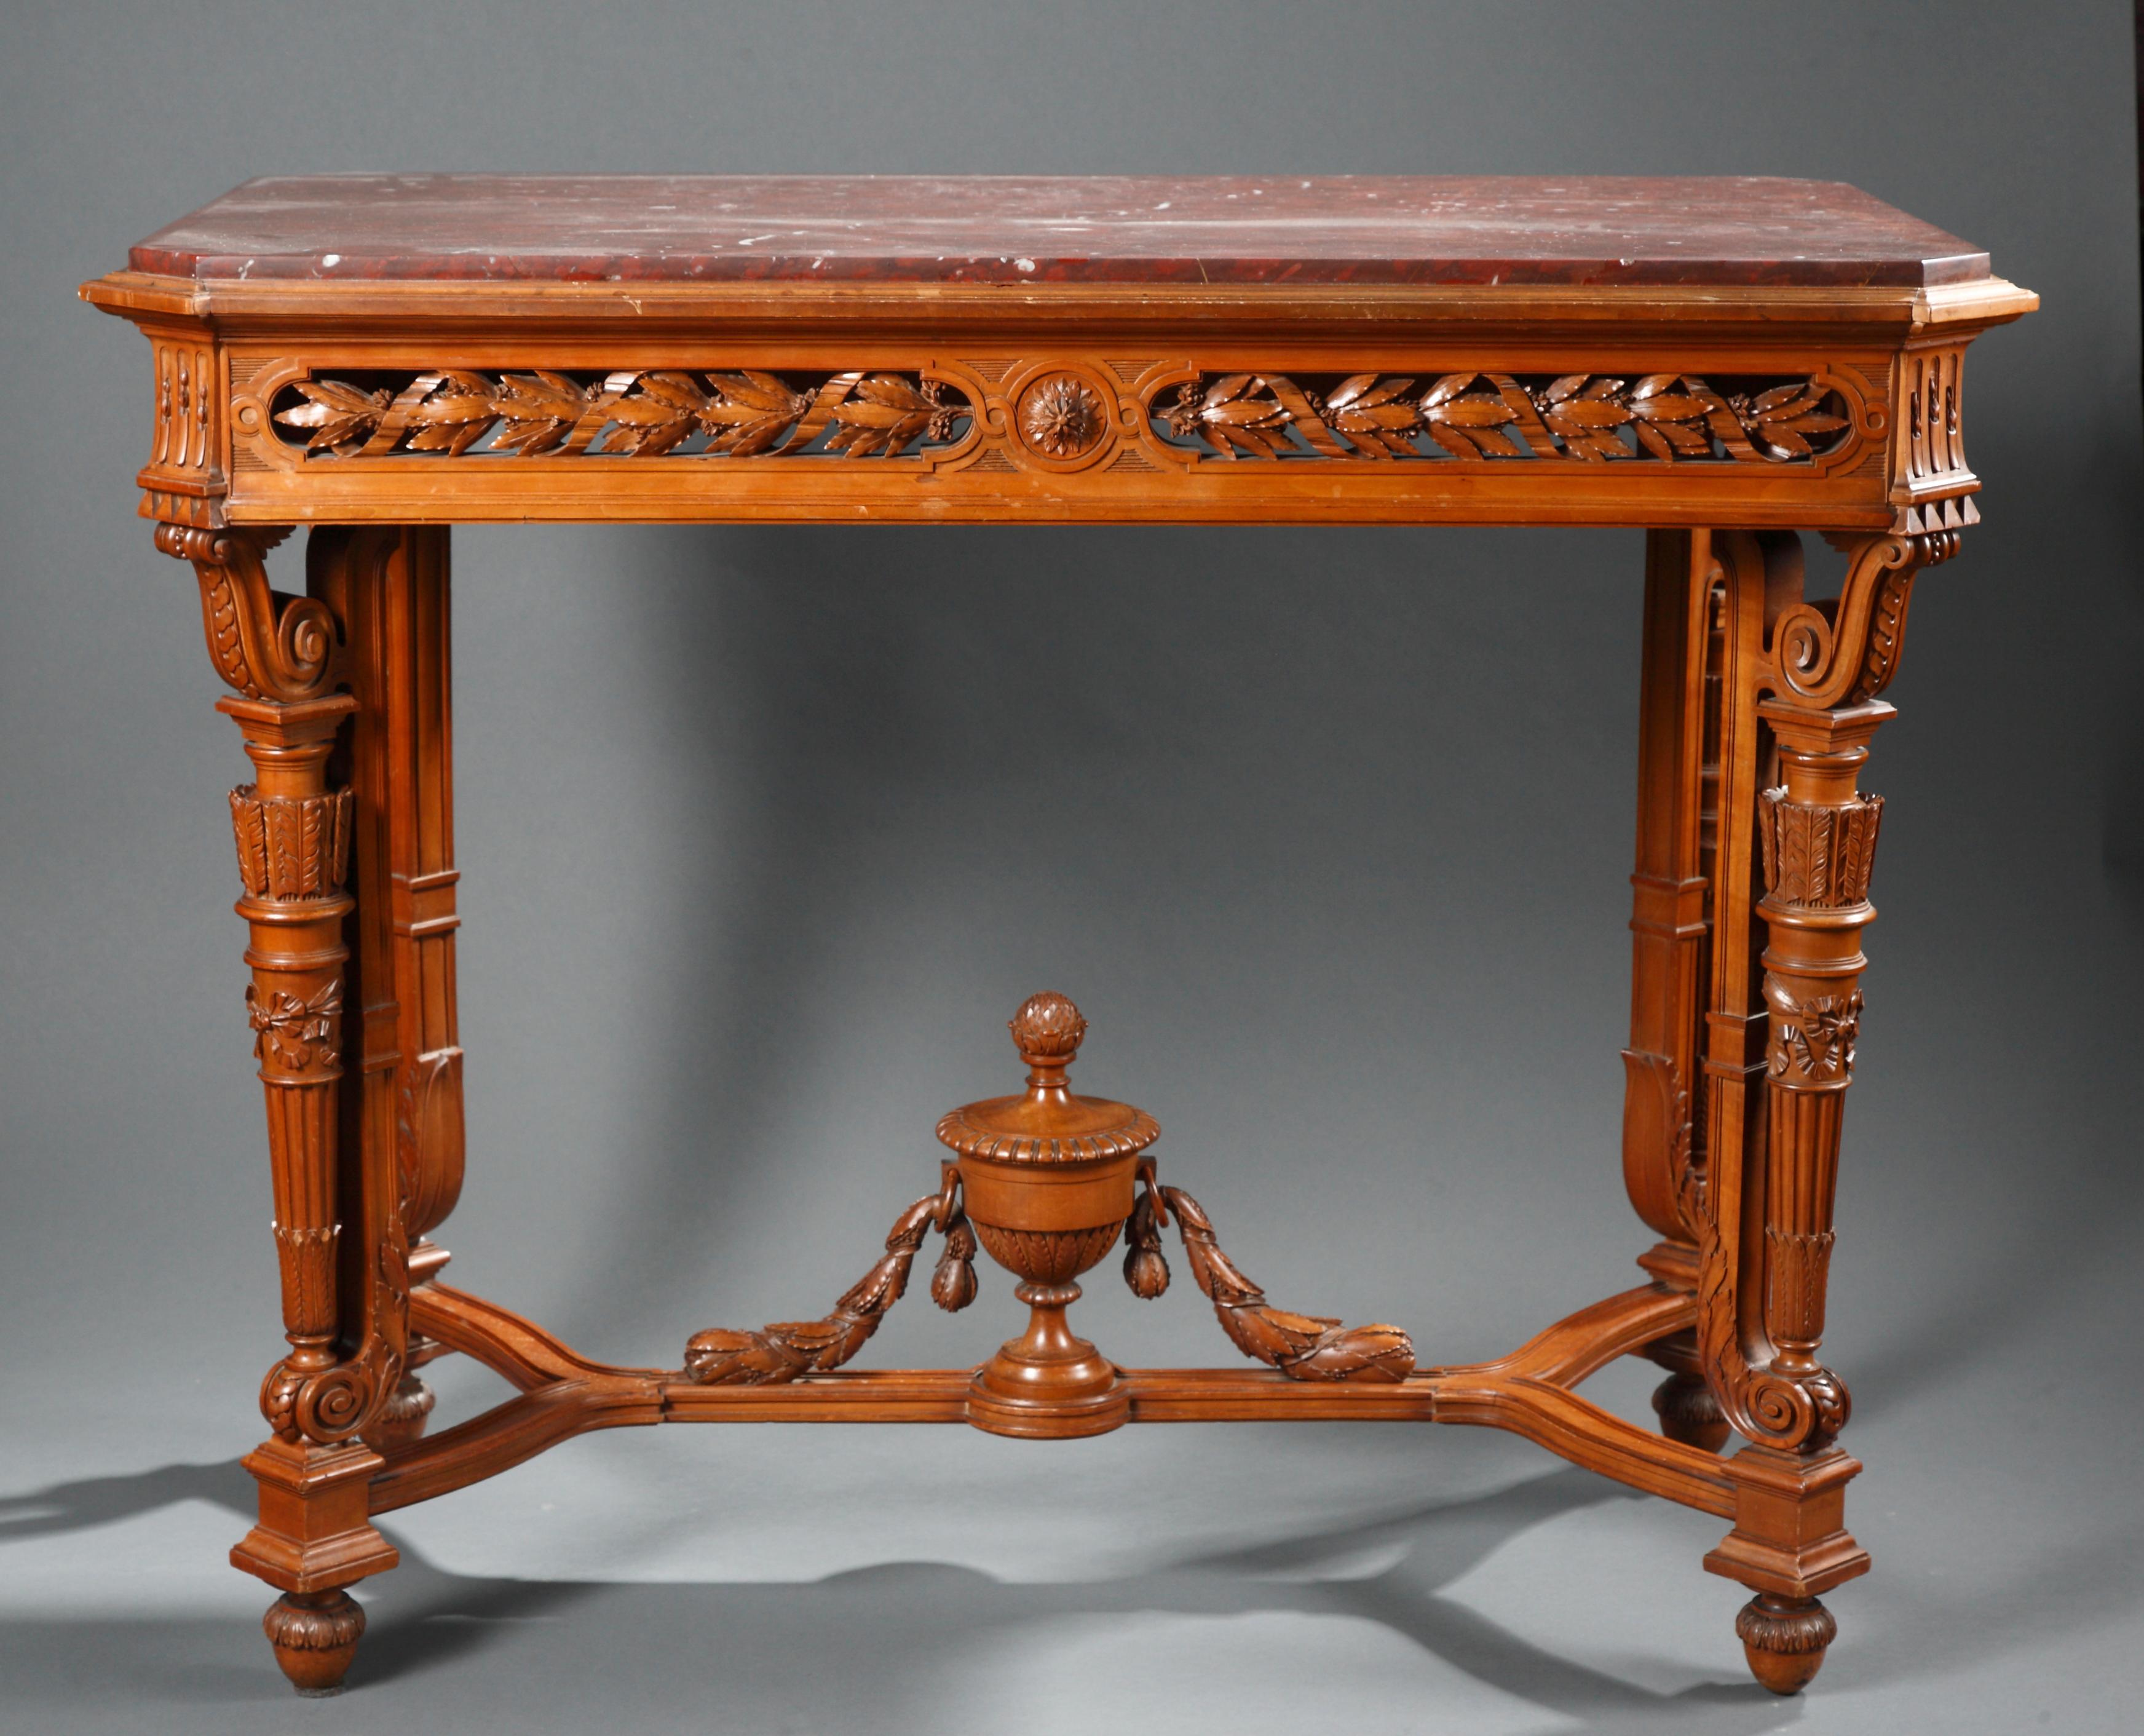 Table centrale réalisée exclusivement en bois richement sculpté et attribuée à A.E. Beurdeley ; avec une fine ceinture percée ornée de branches de laurier. Il repose sur quatre pieds reliés par un brancard, centré par un vase en bois sculpté.